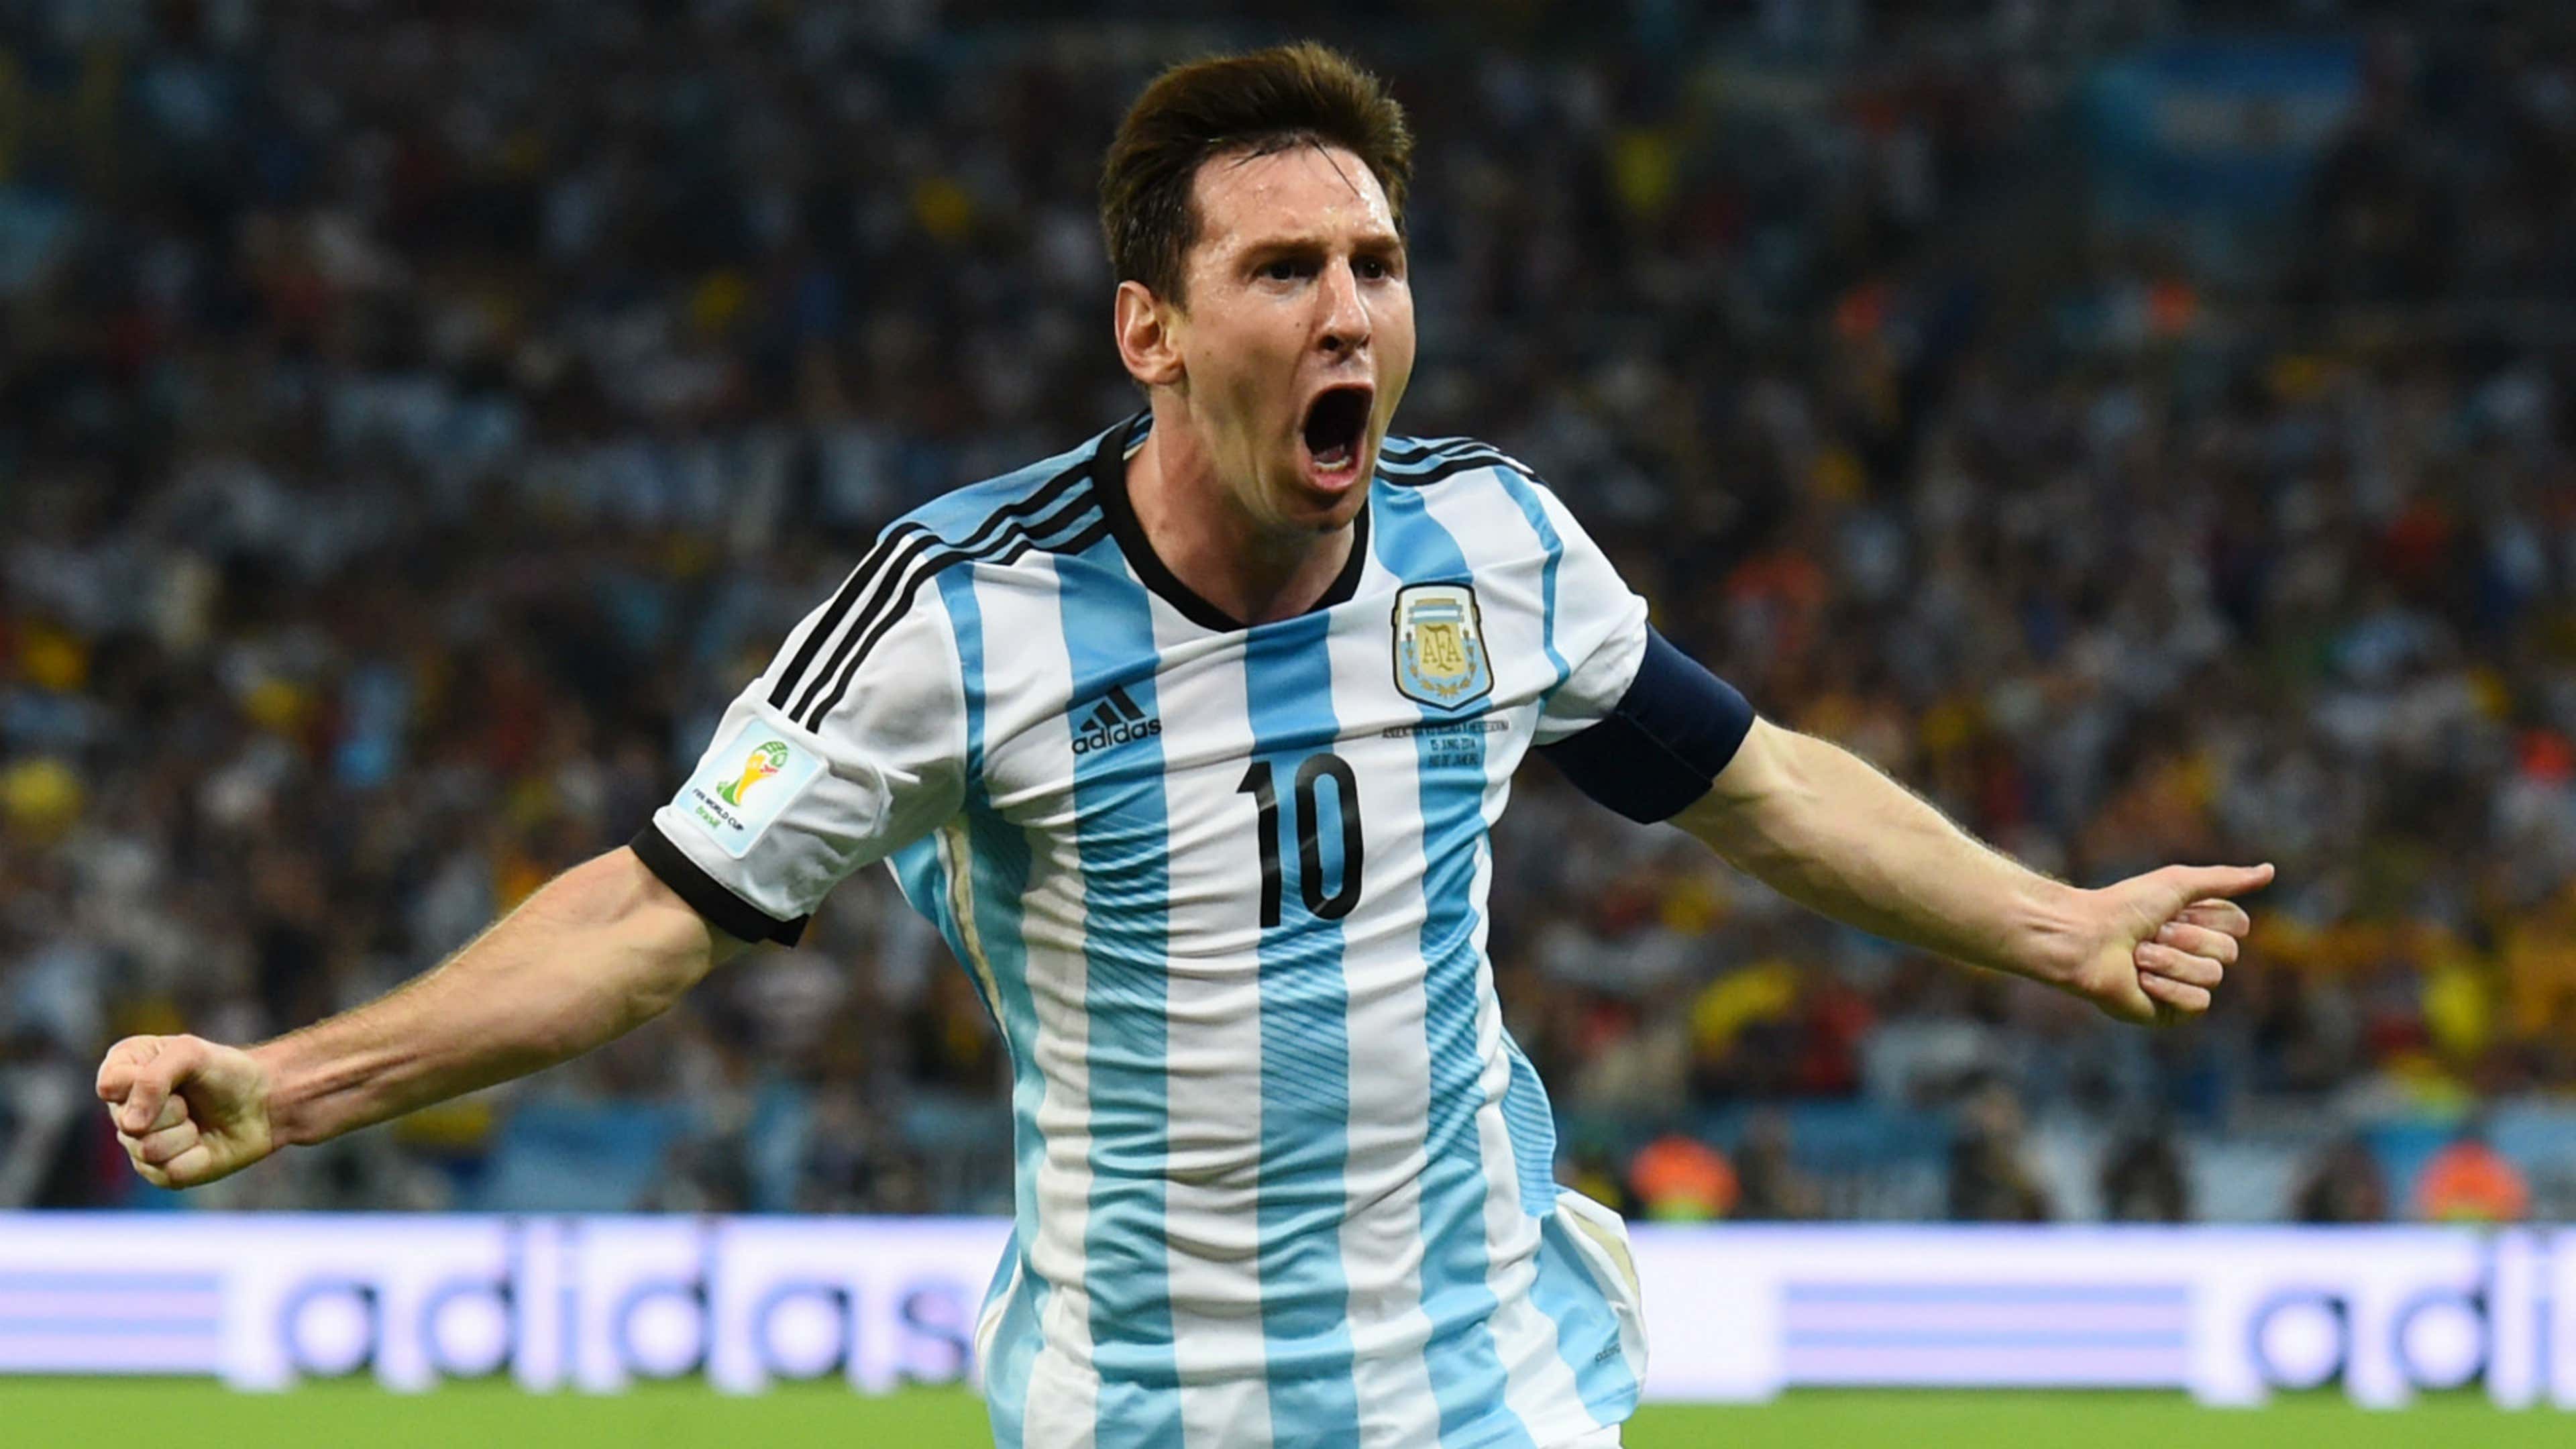 Hoy juega la selección Argentina en el Templo del fútbol Mundial